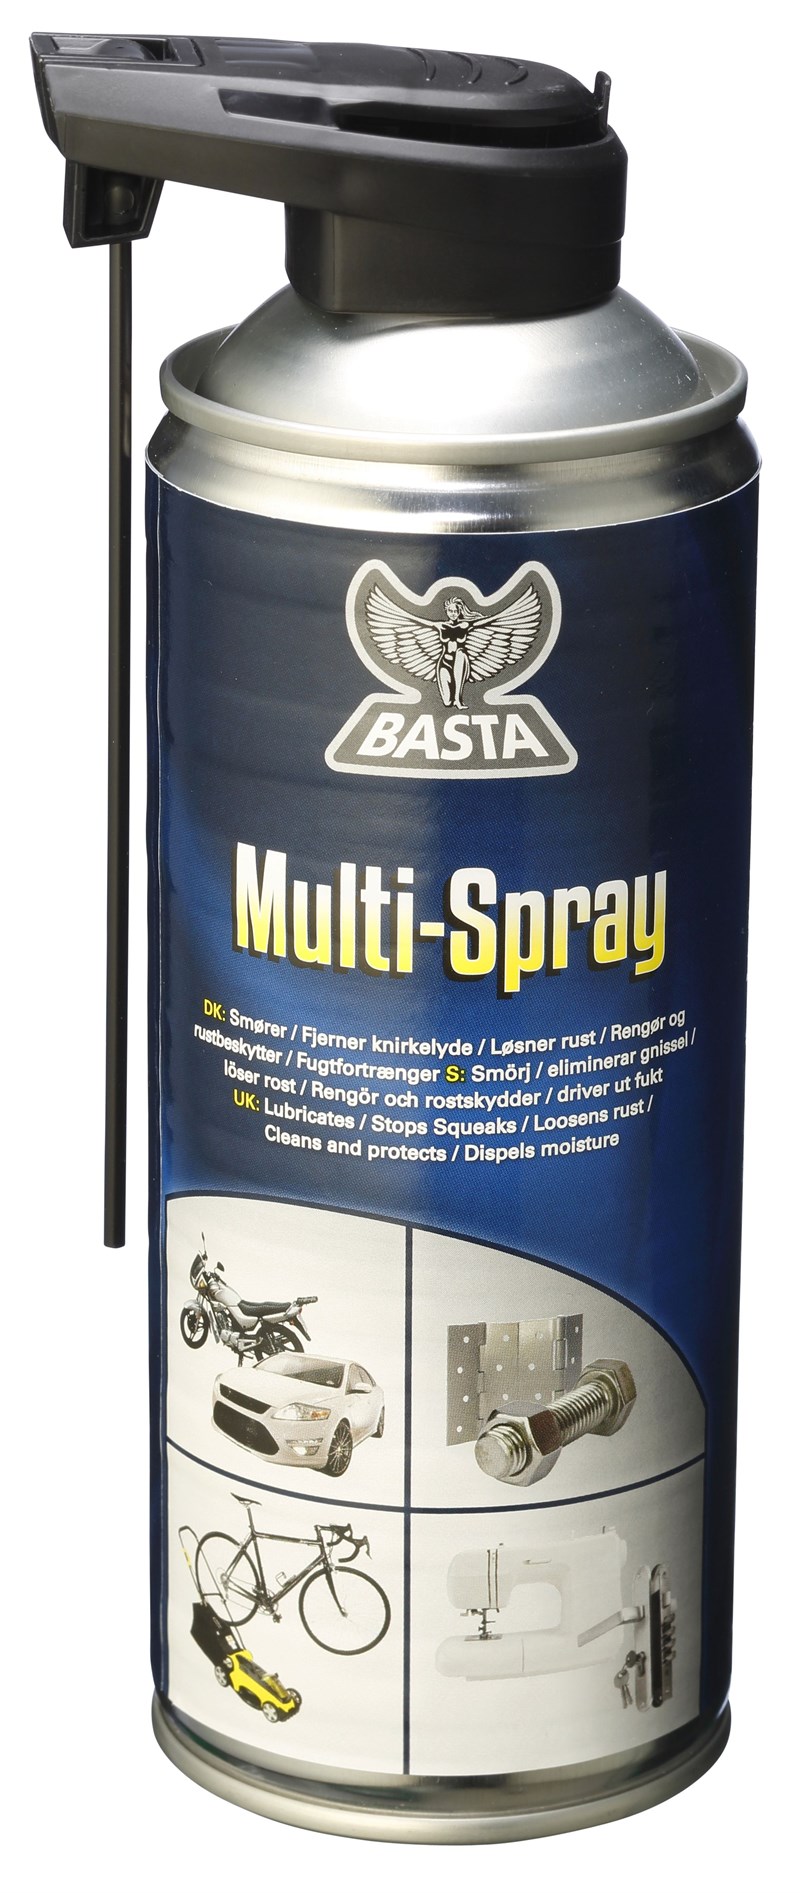 sæt ind Ampere Fremskridt Multispray 999 fra Basta - Smøremiddel til næsten alt